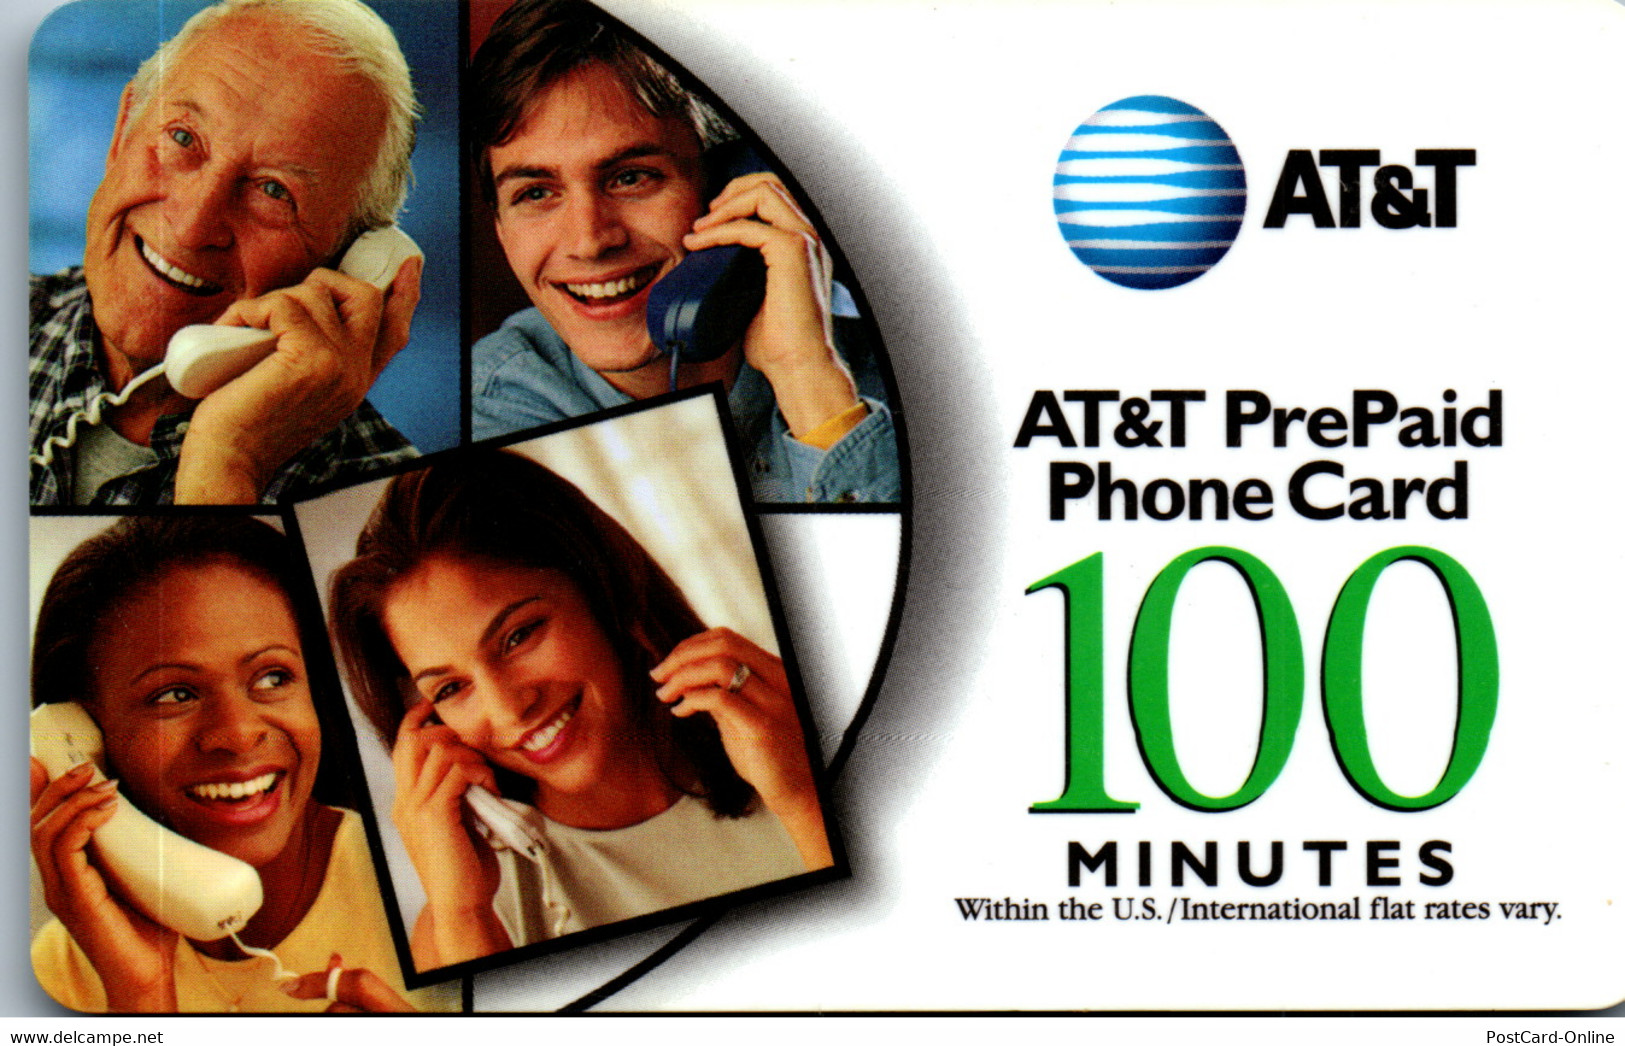 18270 - USA - AT&T Prepaid PhoneCard - AT&T